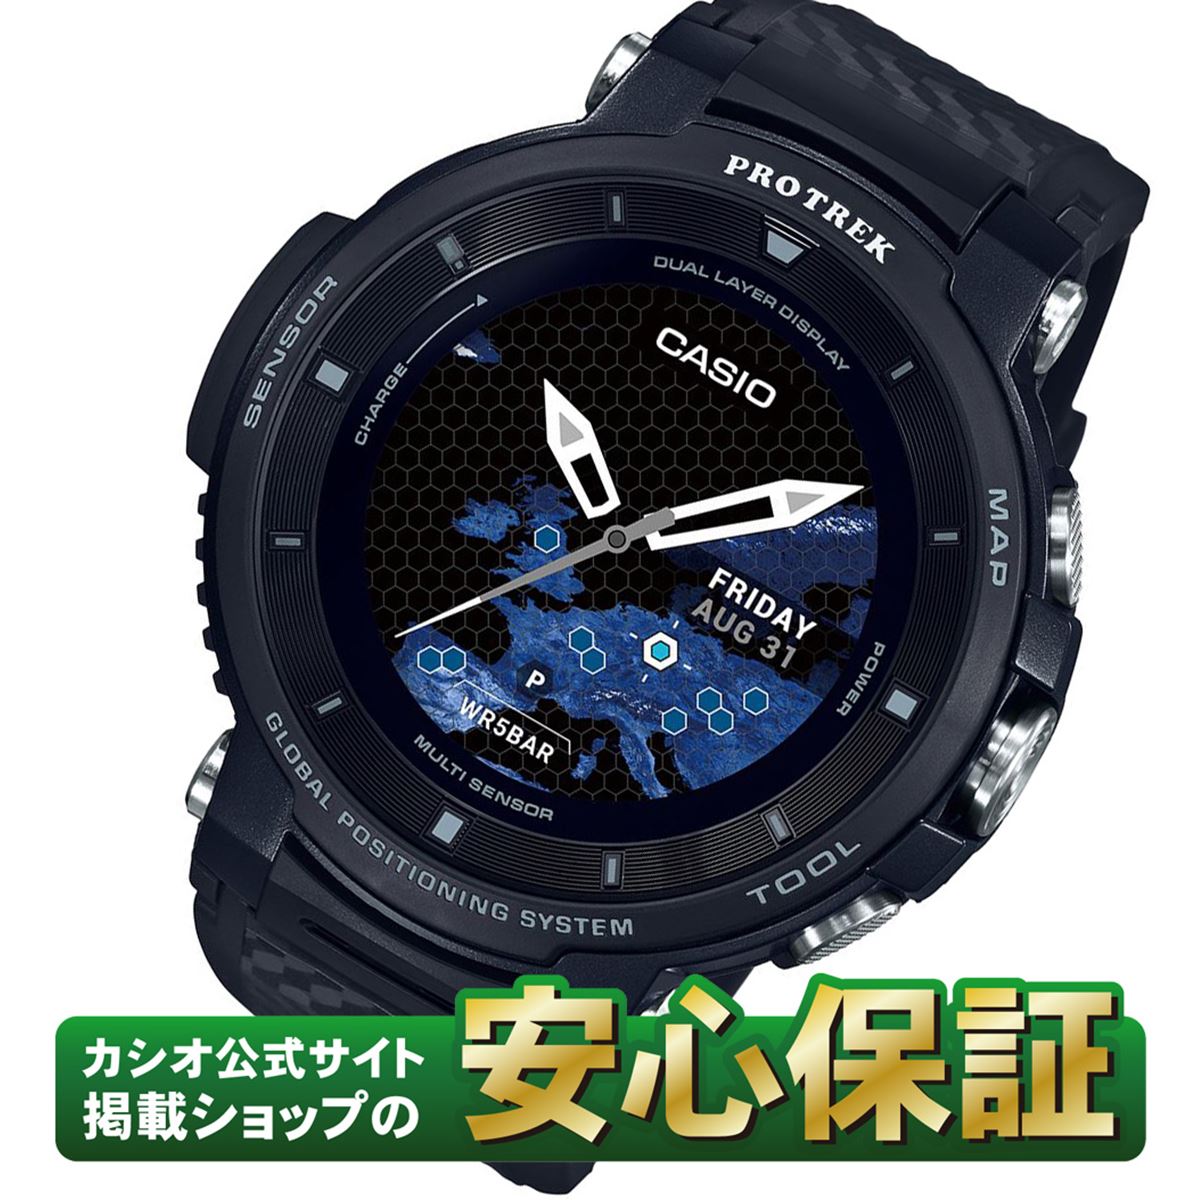 カシオ スマートウォッチ WSD-F30-BK プロトレック スマート Smart Outdoor Watch アウトドア 5気圧防水 GPS搭載 ウェアラブル端末 PROTREK Smart _10spl